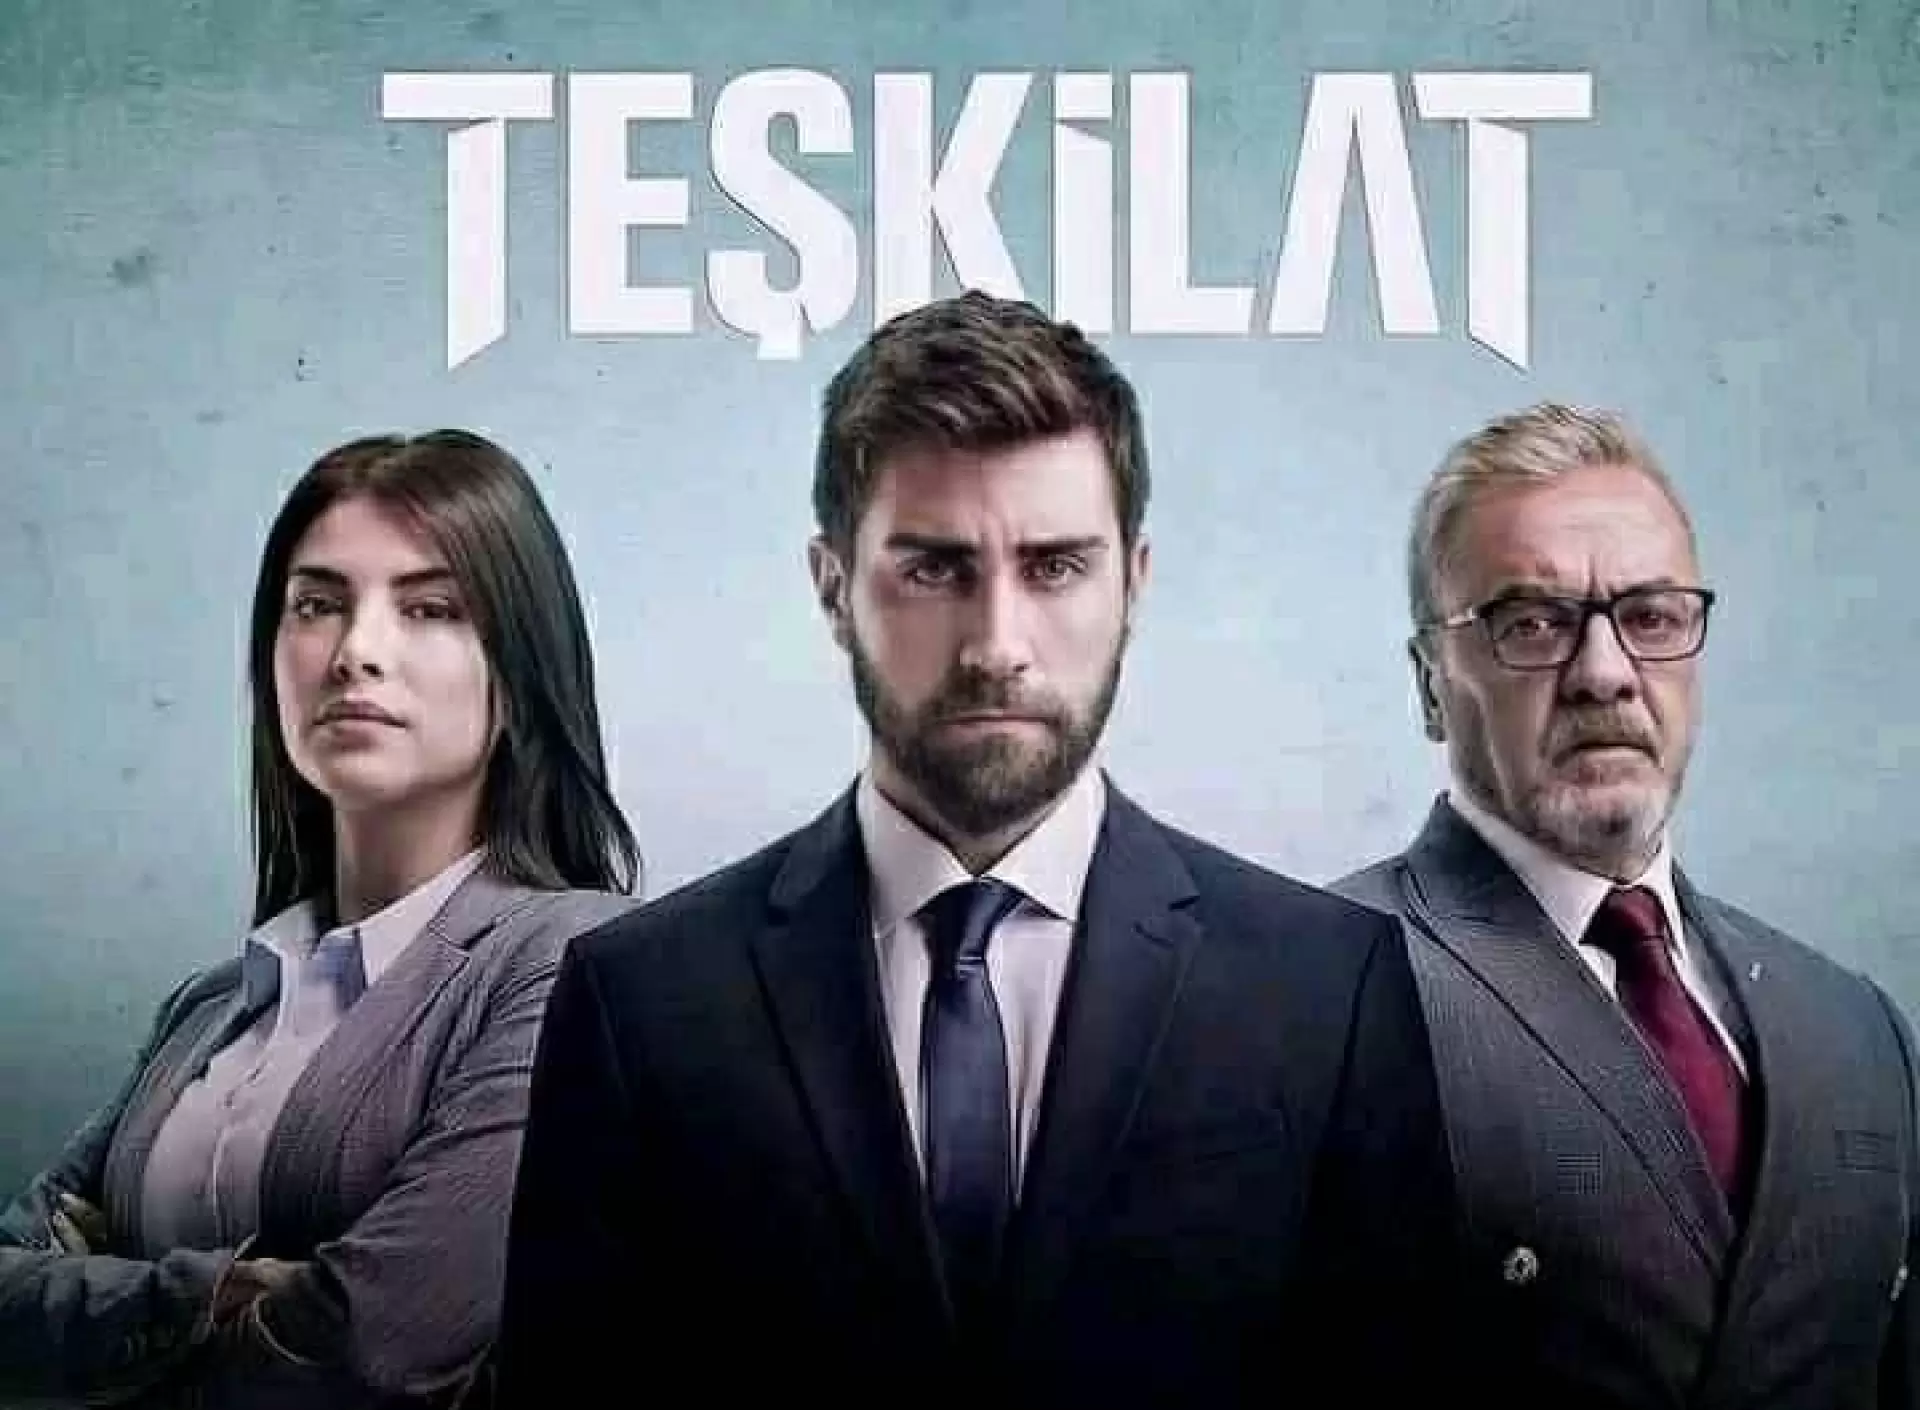 دانلود سریال Ankara 2021